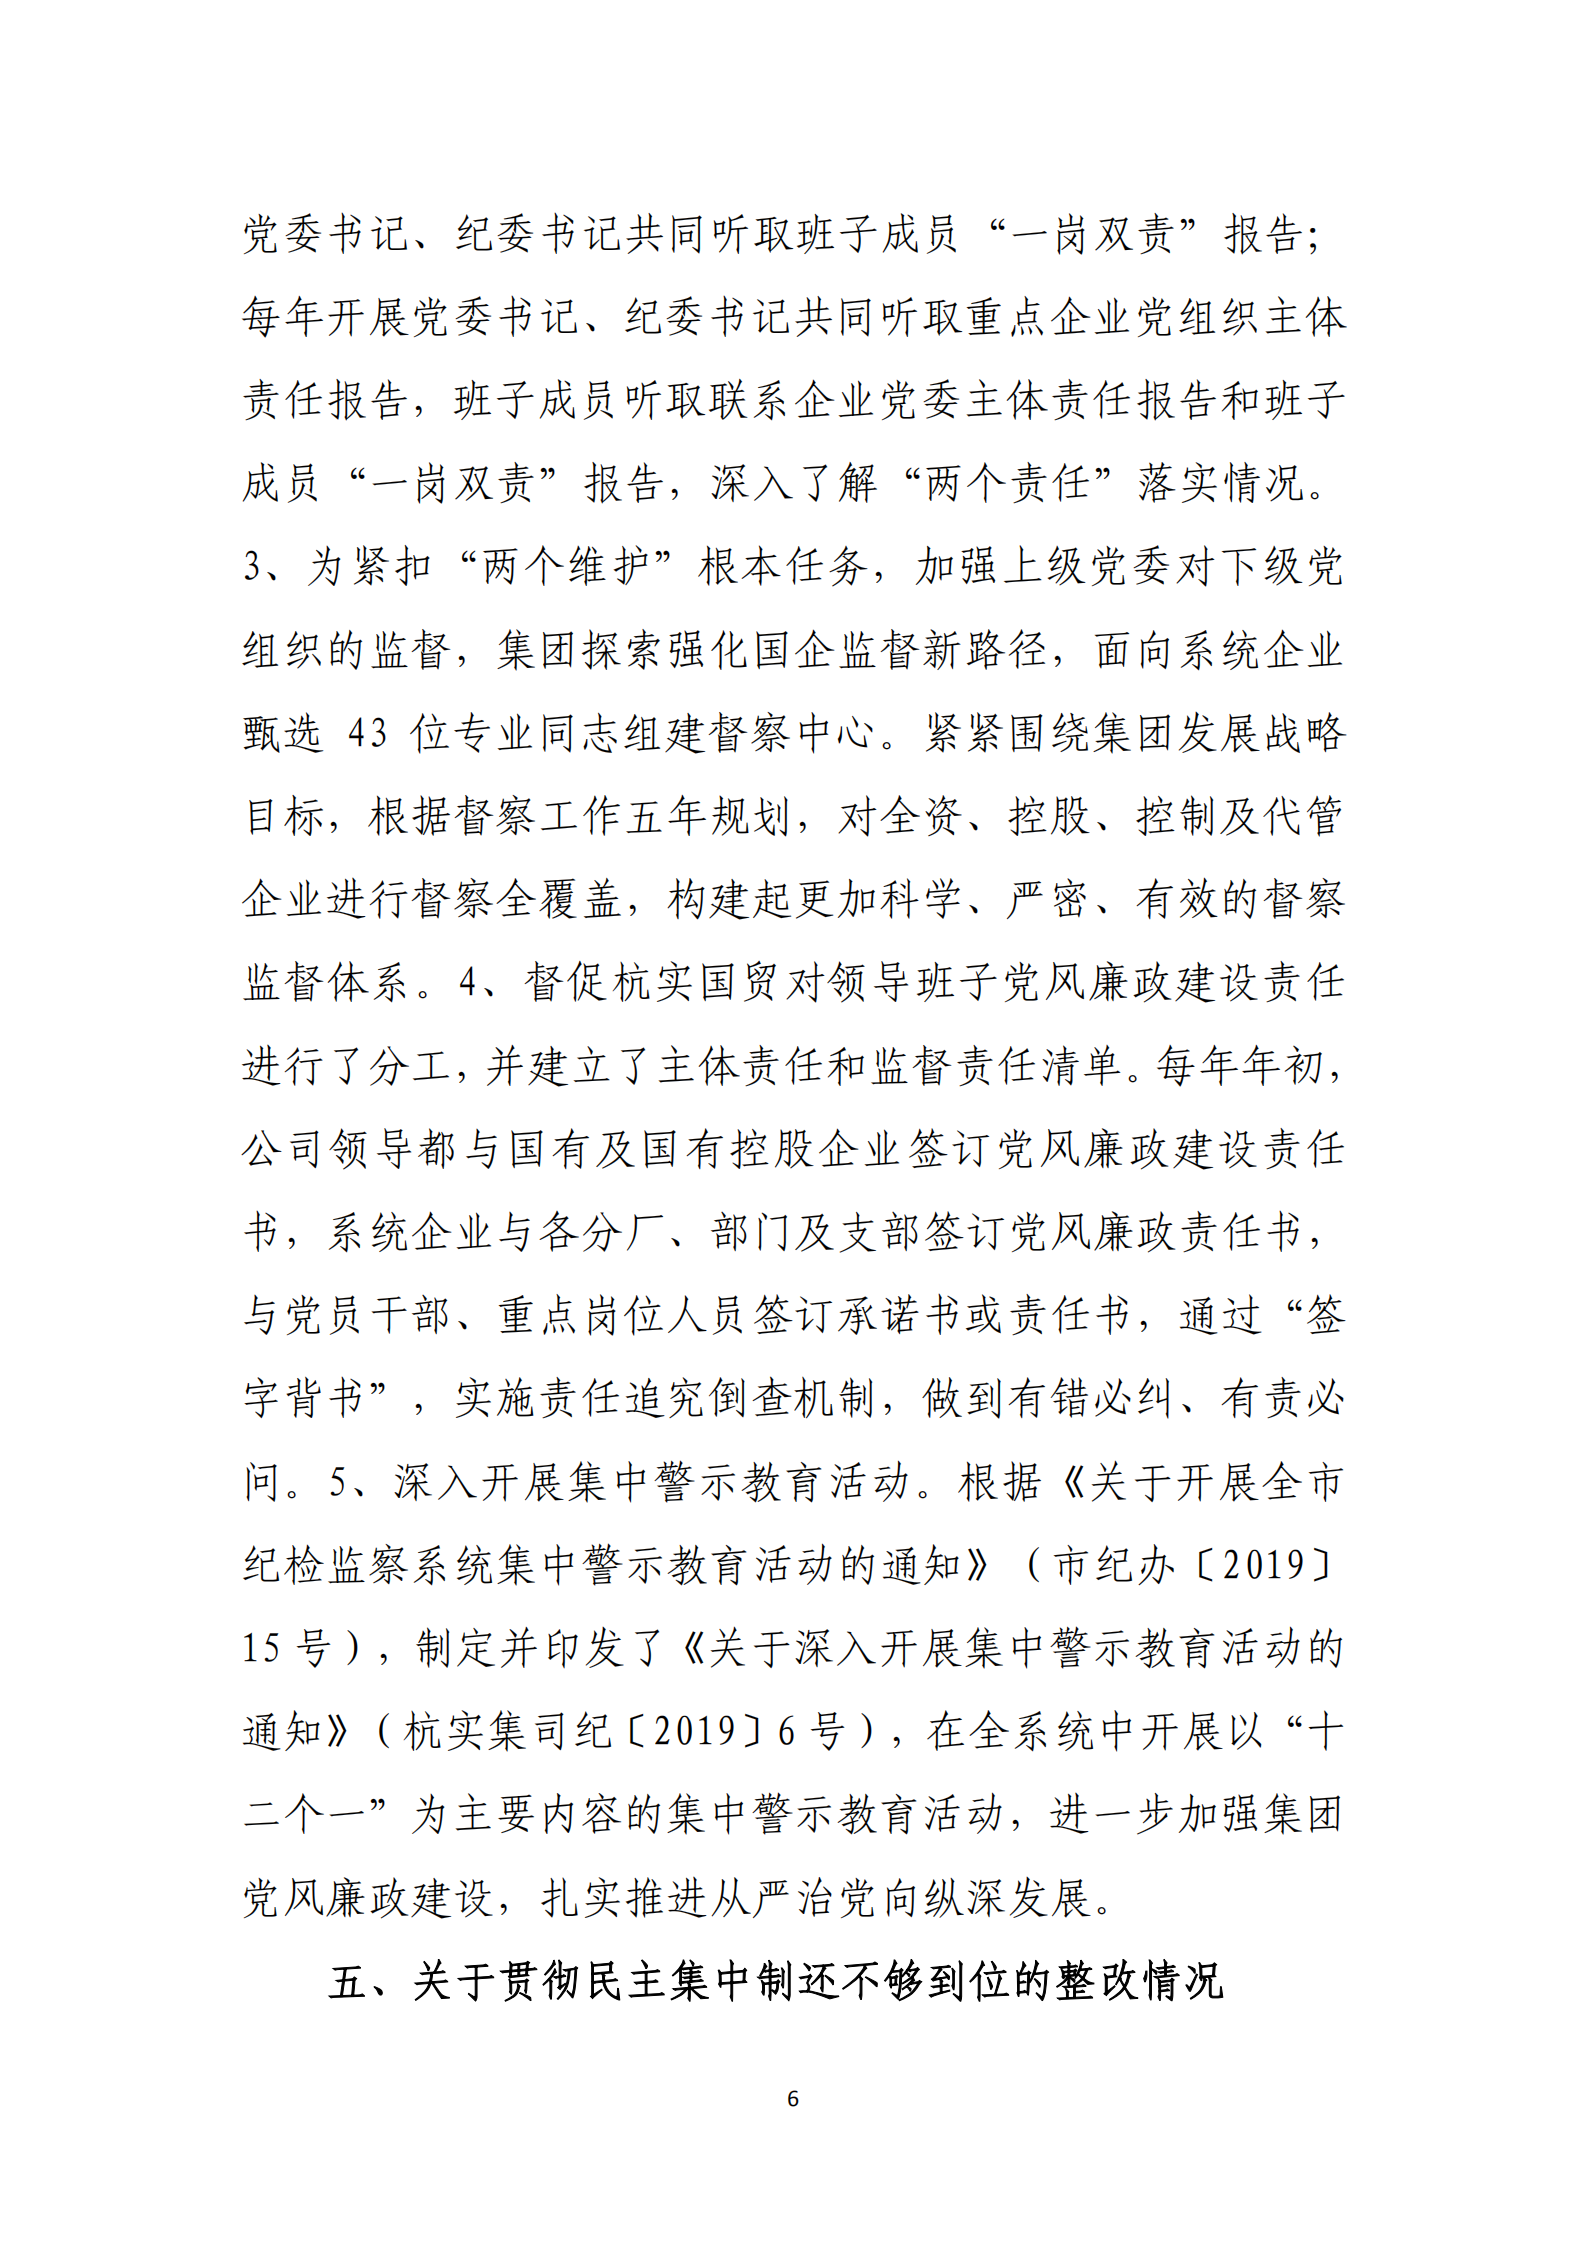 乐虎国际游戏官网党委关于巡察整改情况的通报_05.png